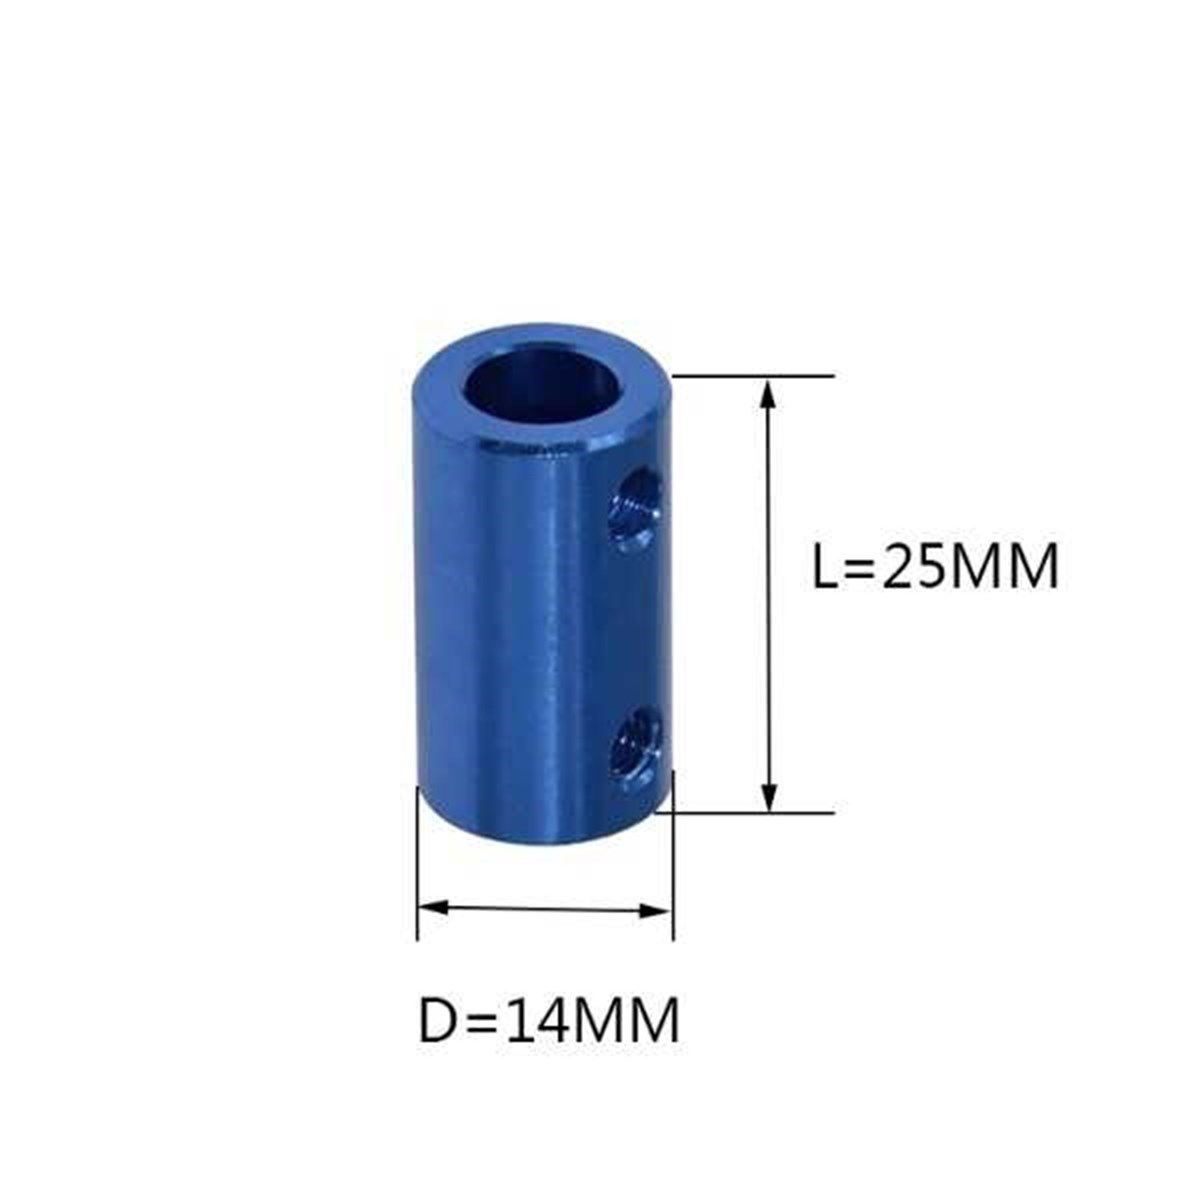 3D Yazıcı 5x5mm Kaplin(Coupling) - Mavi